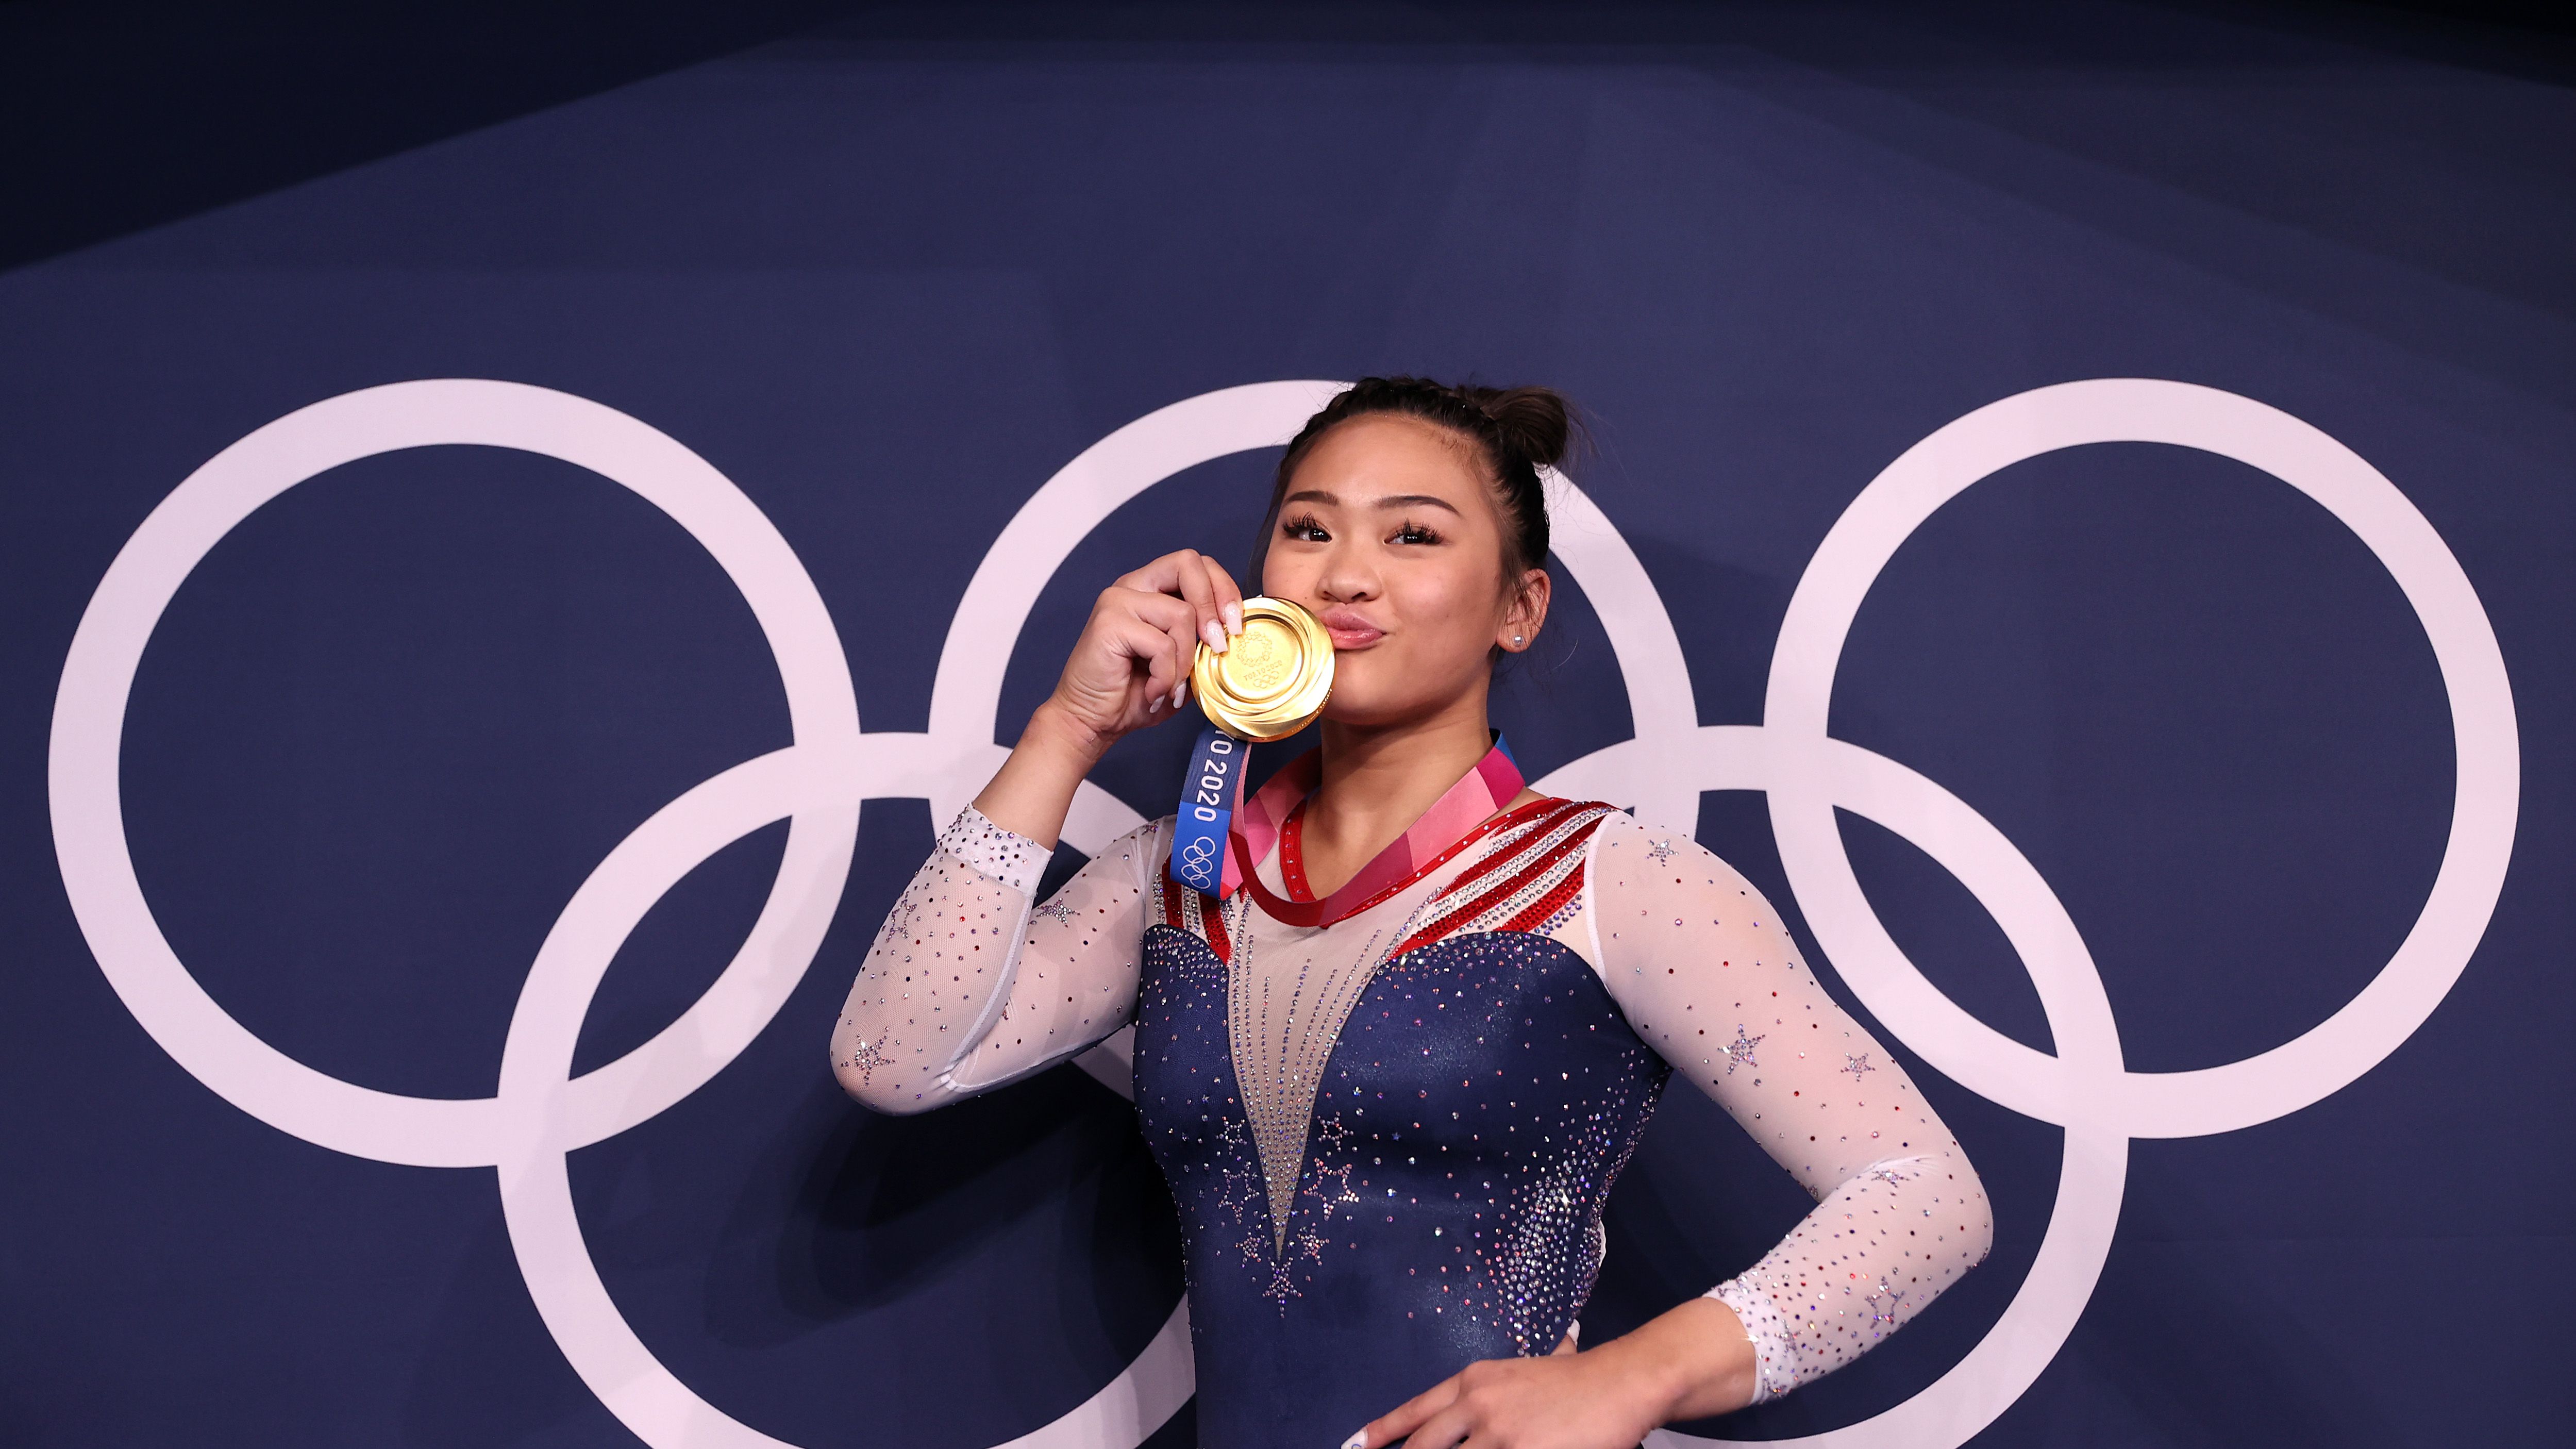 St. Paul gymnast Sunisa Lee earns bronze in uneven bars